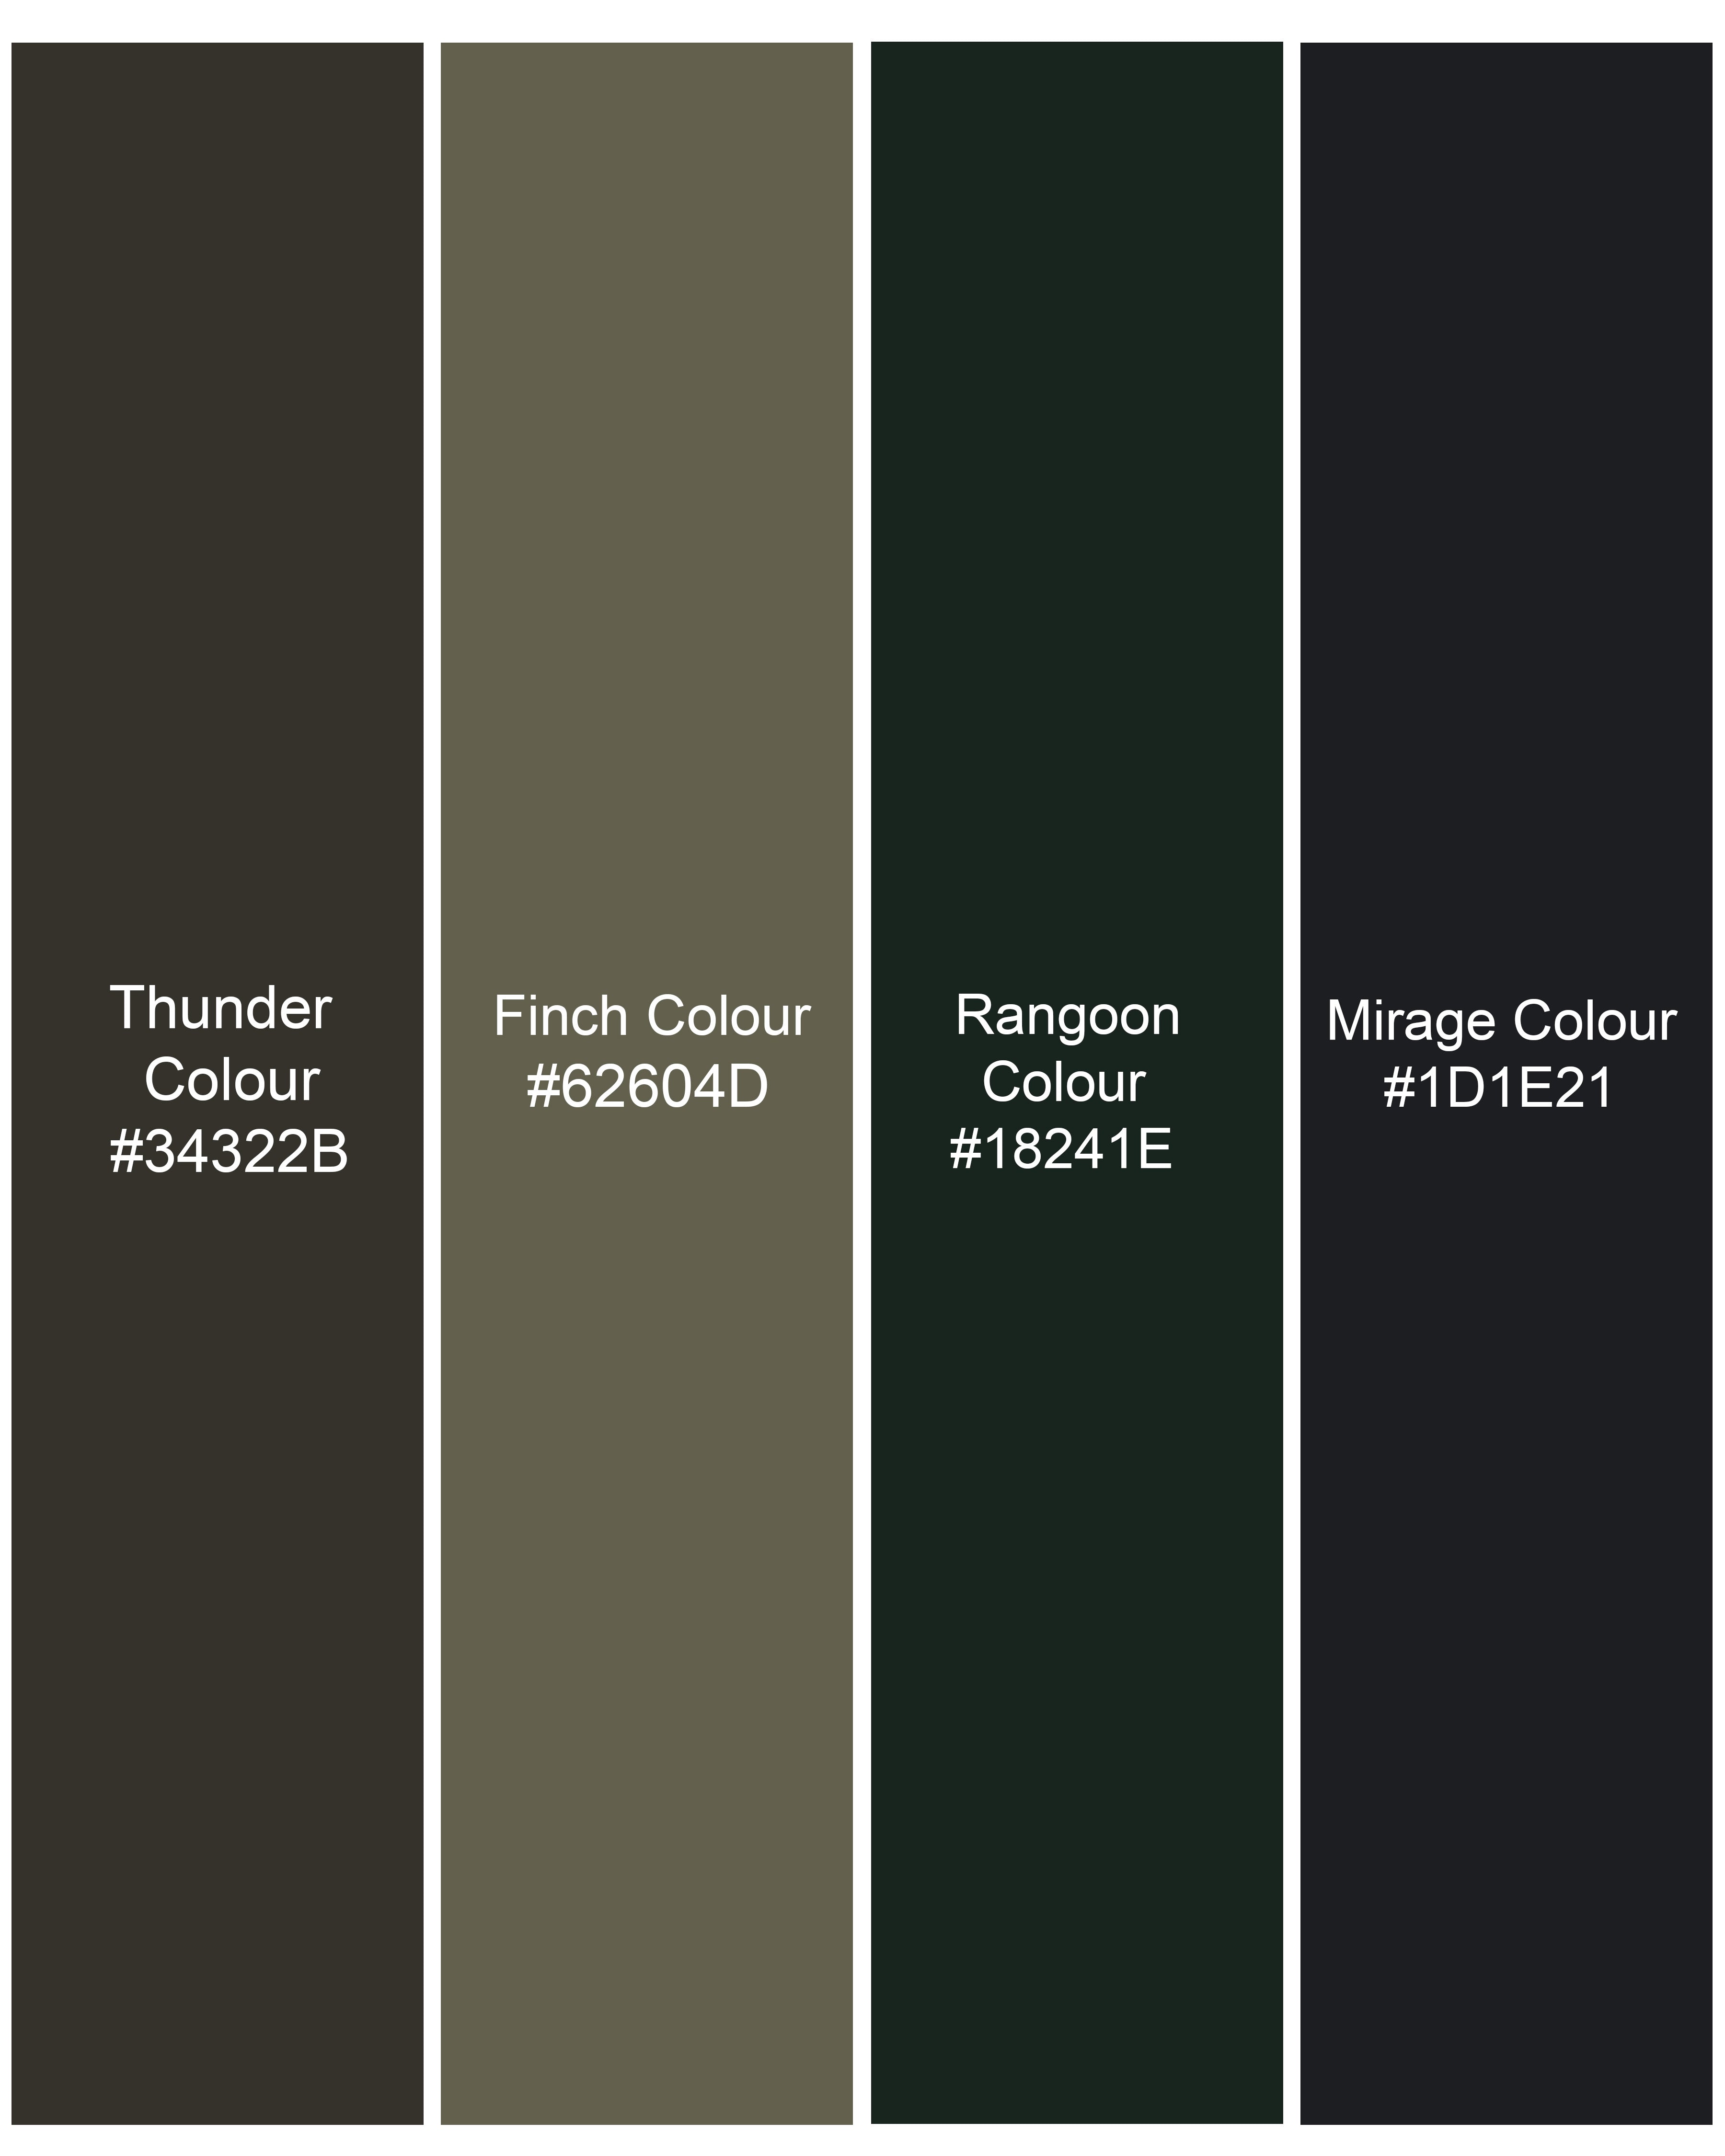 Thunder Brown with Rangoon Green Camouflage Printed Royal Oxford Shirt 8919-MB-38, 8919-MB-H-38,  8919-MB-39,  8919-MB-H-39,  8919-MB-40,  8919-MB-H-40,  8919-MB-42,  8919-MB-H-42,  8919-MB-44,  8919-MB-H-44,  8919-MB-46,  8919-MB-H-46,  8919-MB-48,  8919-MB-H-48,  8919-MB-50,  8919-MB-H-50,  8919-MB-52,  8919-MB-H-52